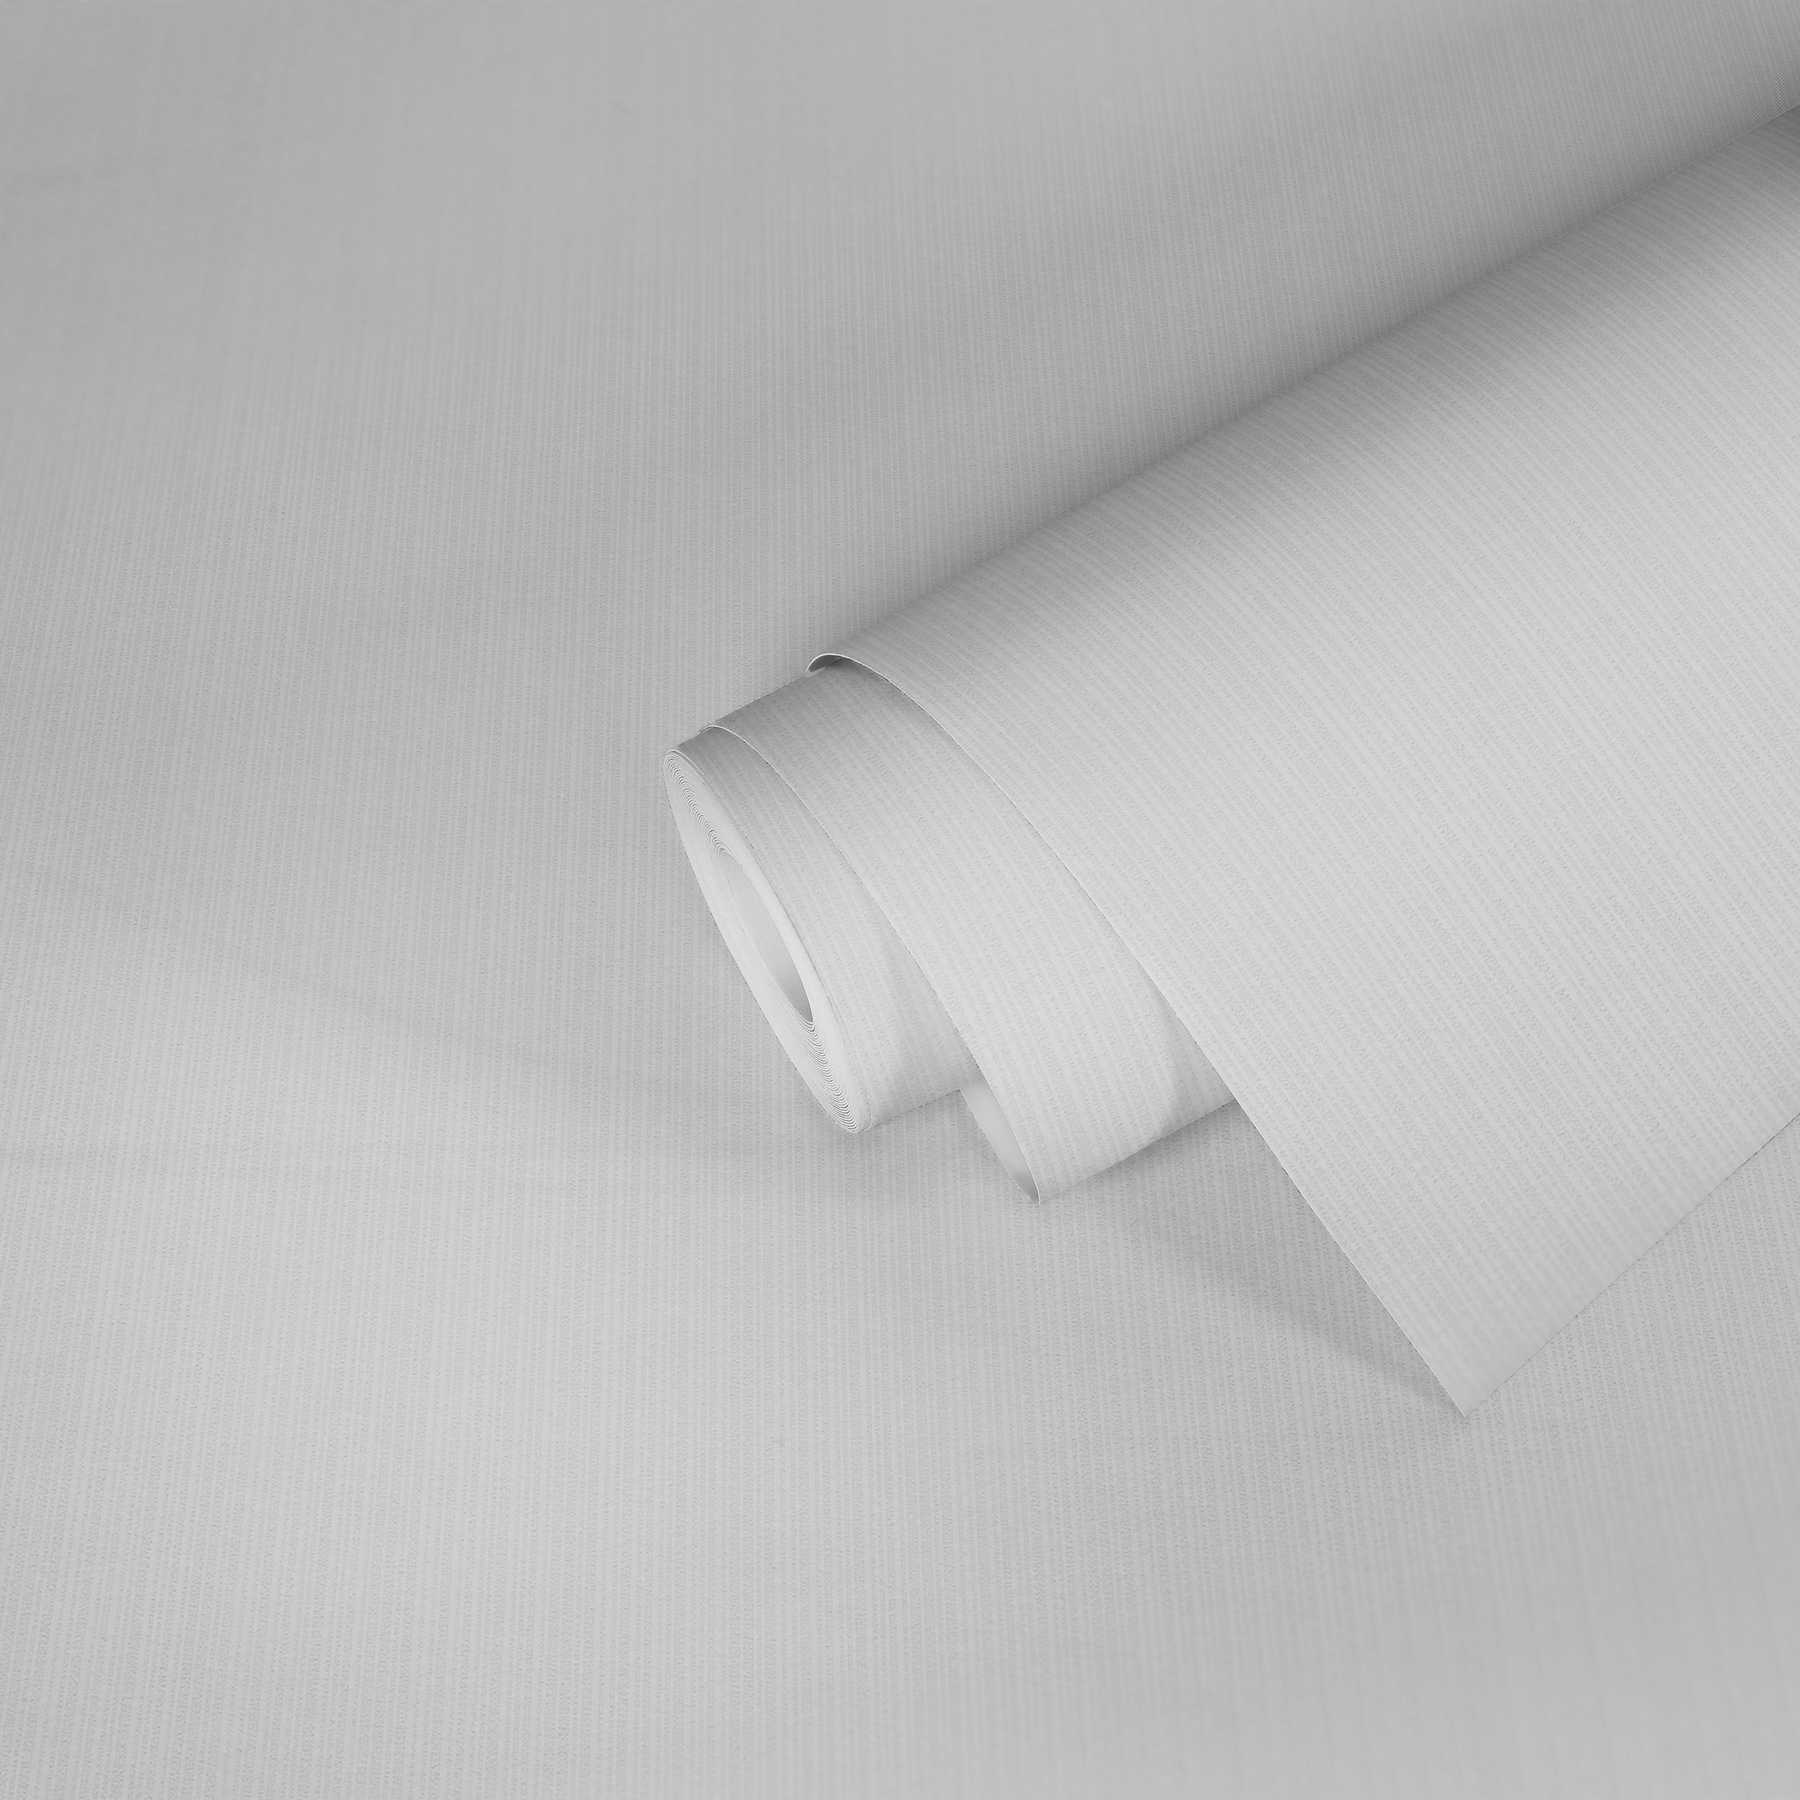             Papier peint intissé Pigment uni blanc avec motifs structurés
        